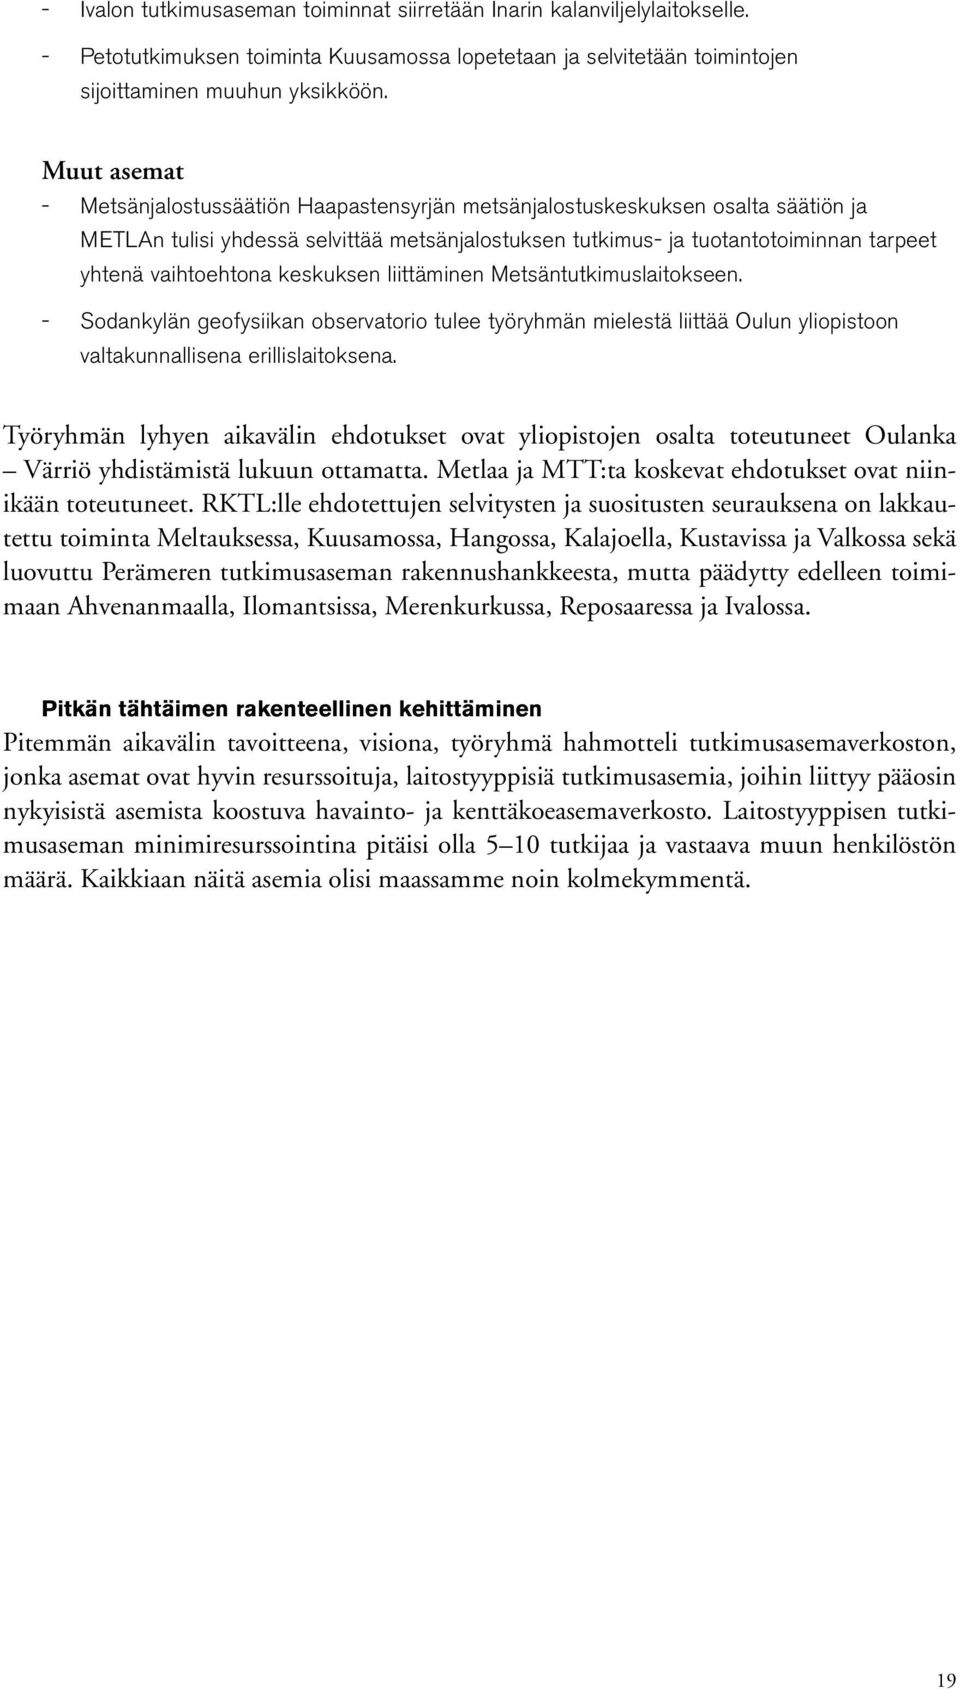 keskuksen liittäminen Metsäntutkimuslaitokseen. Sodankylän geofysiikan observatorio tulee työryhmän mielestä liittää Oulun yliopistoon valtakunnallisena erillislaitoksena.